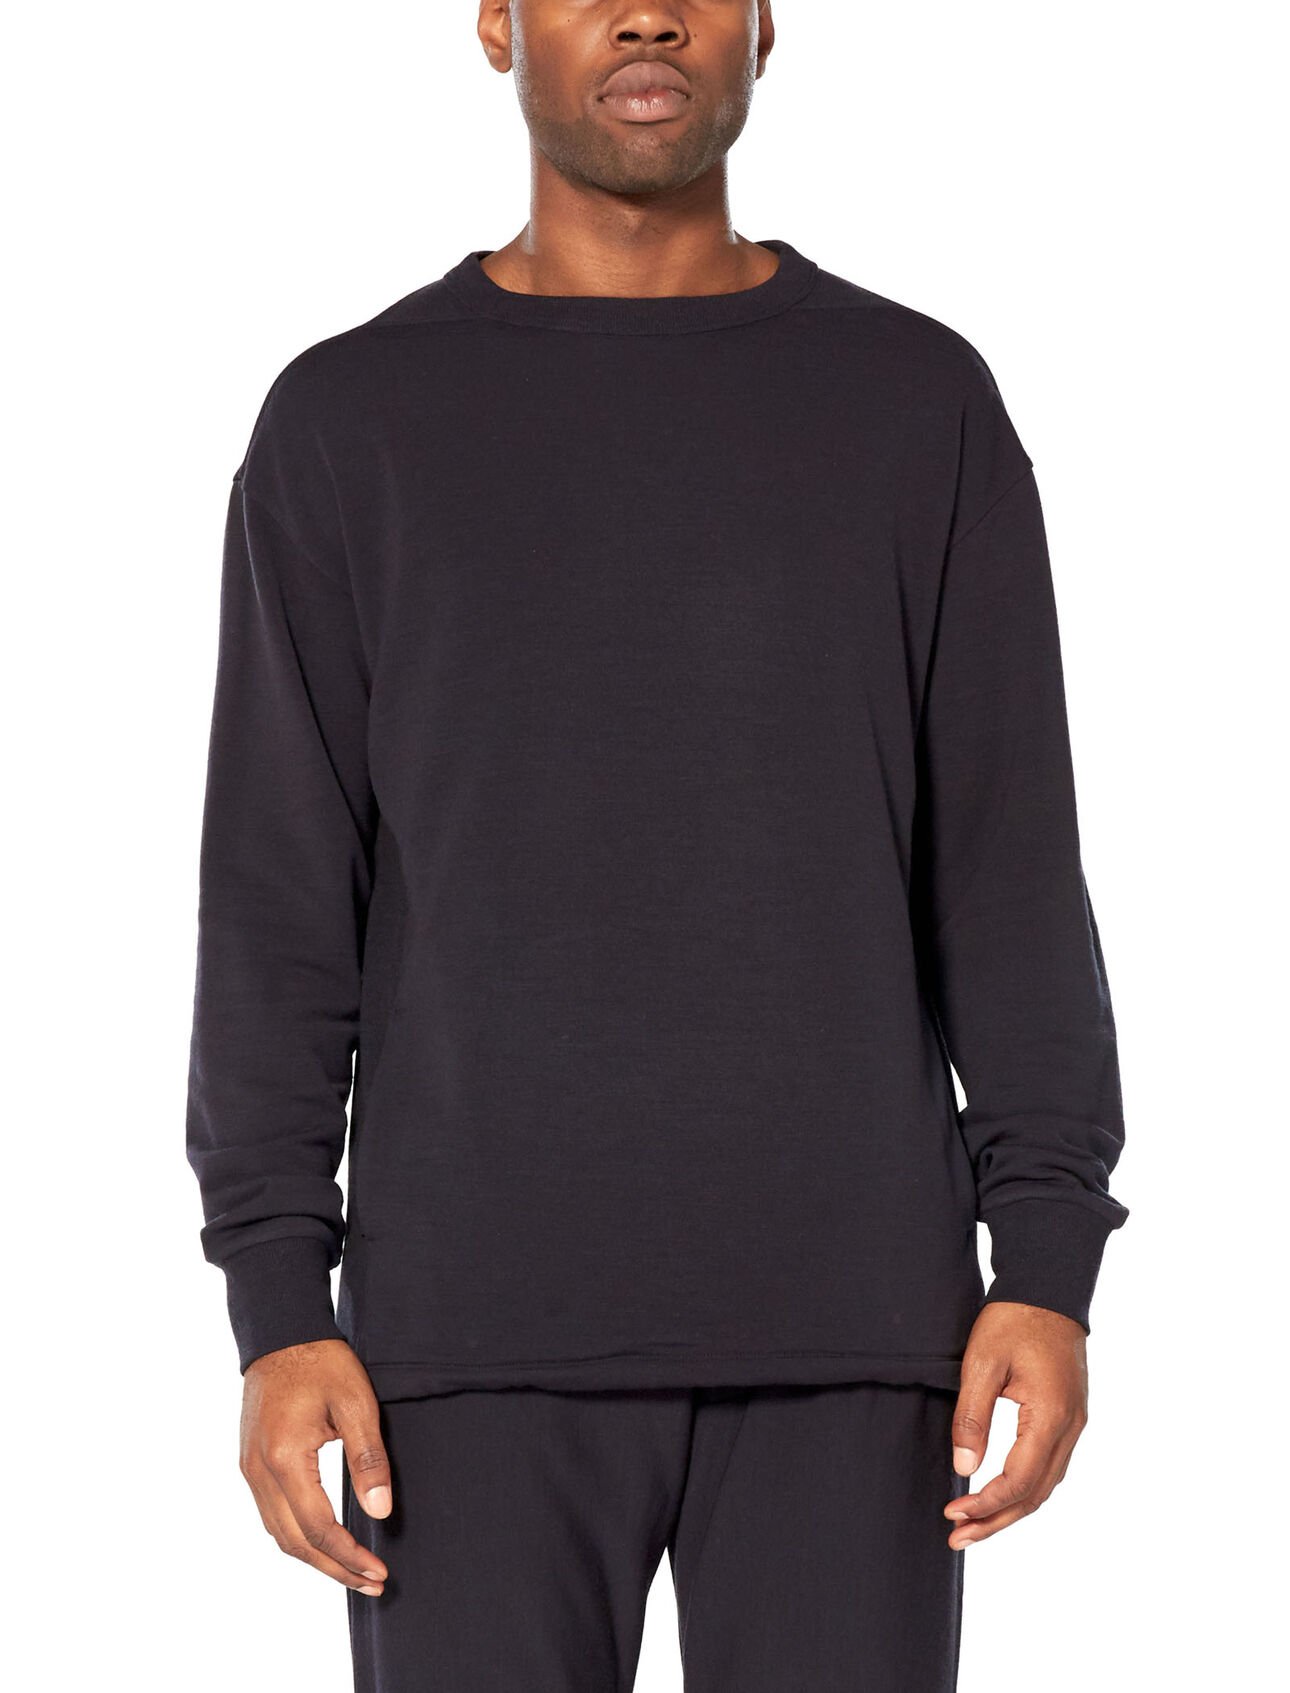 RealFleece® sweatshirt met lange mouwen en ronde hals